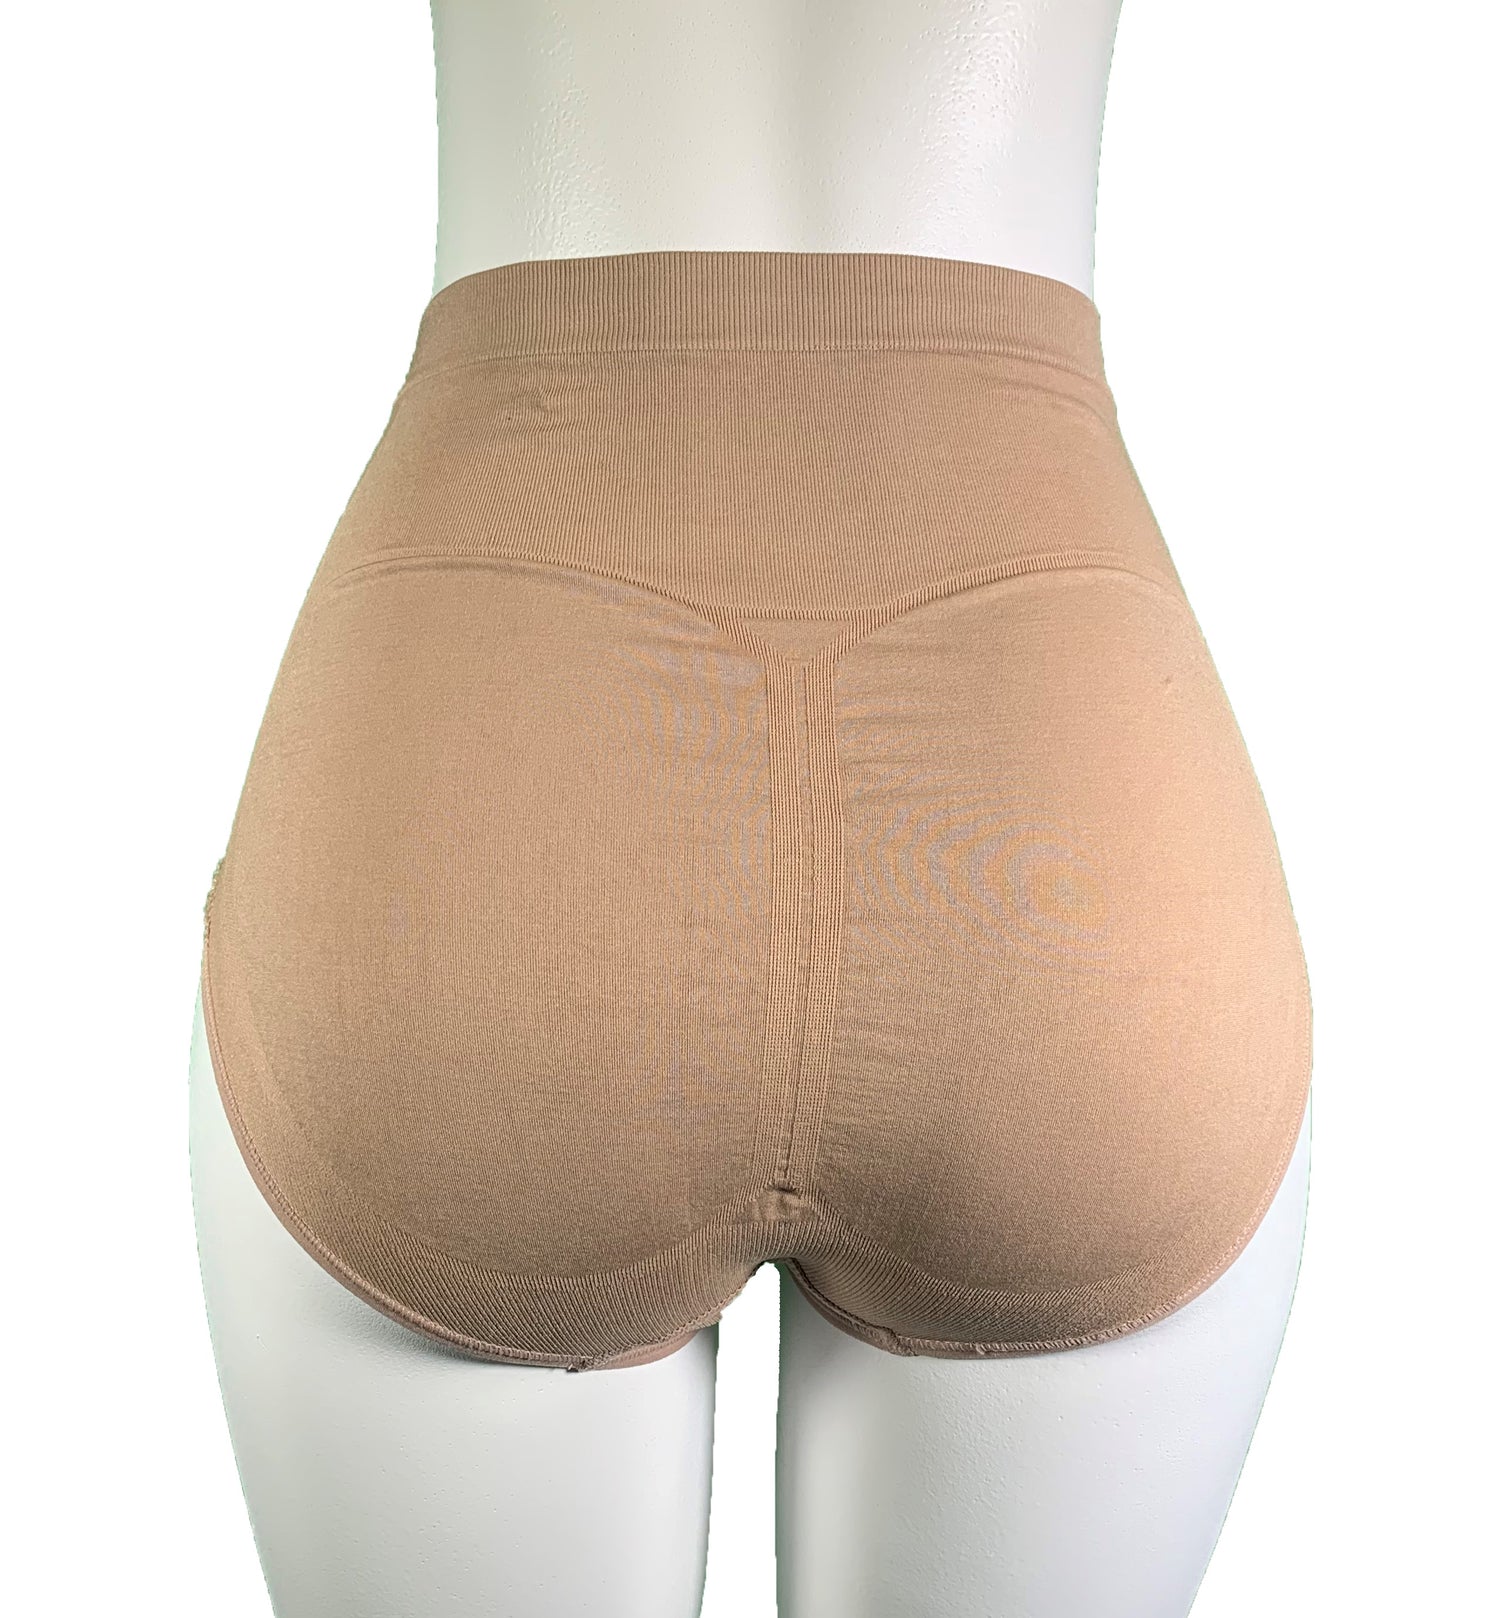 Panty Faja De Control De Abdomen Y Cintura 01282 XL Beige